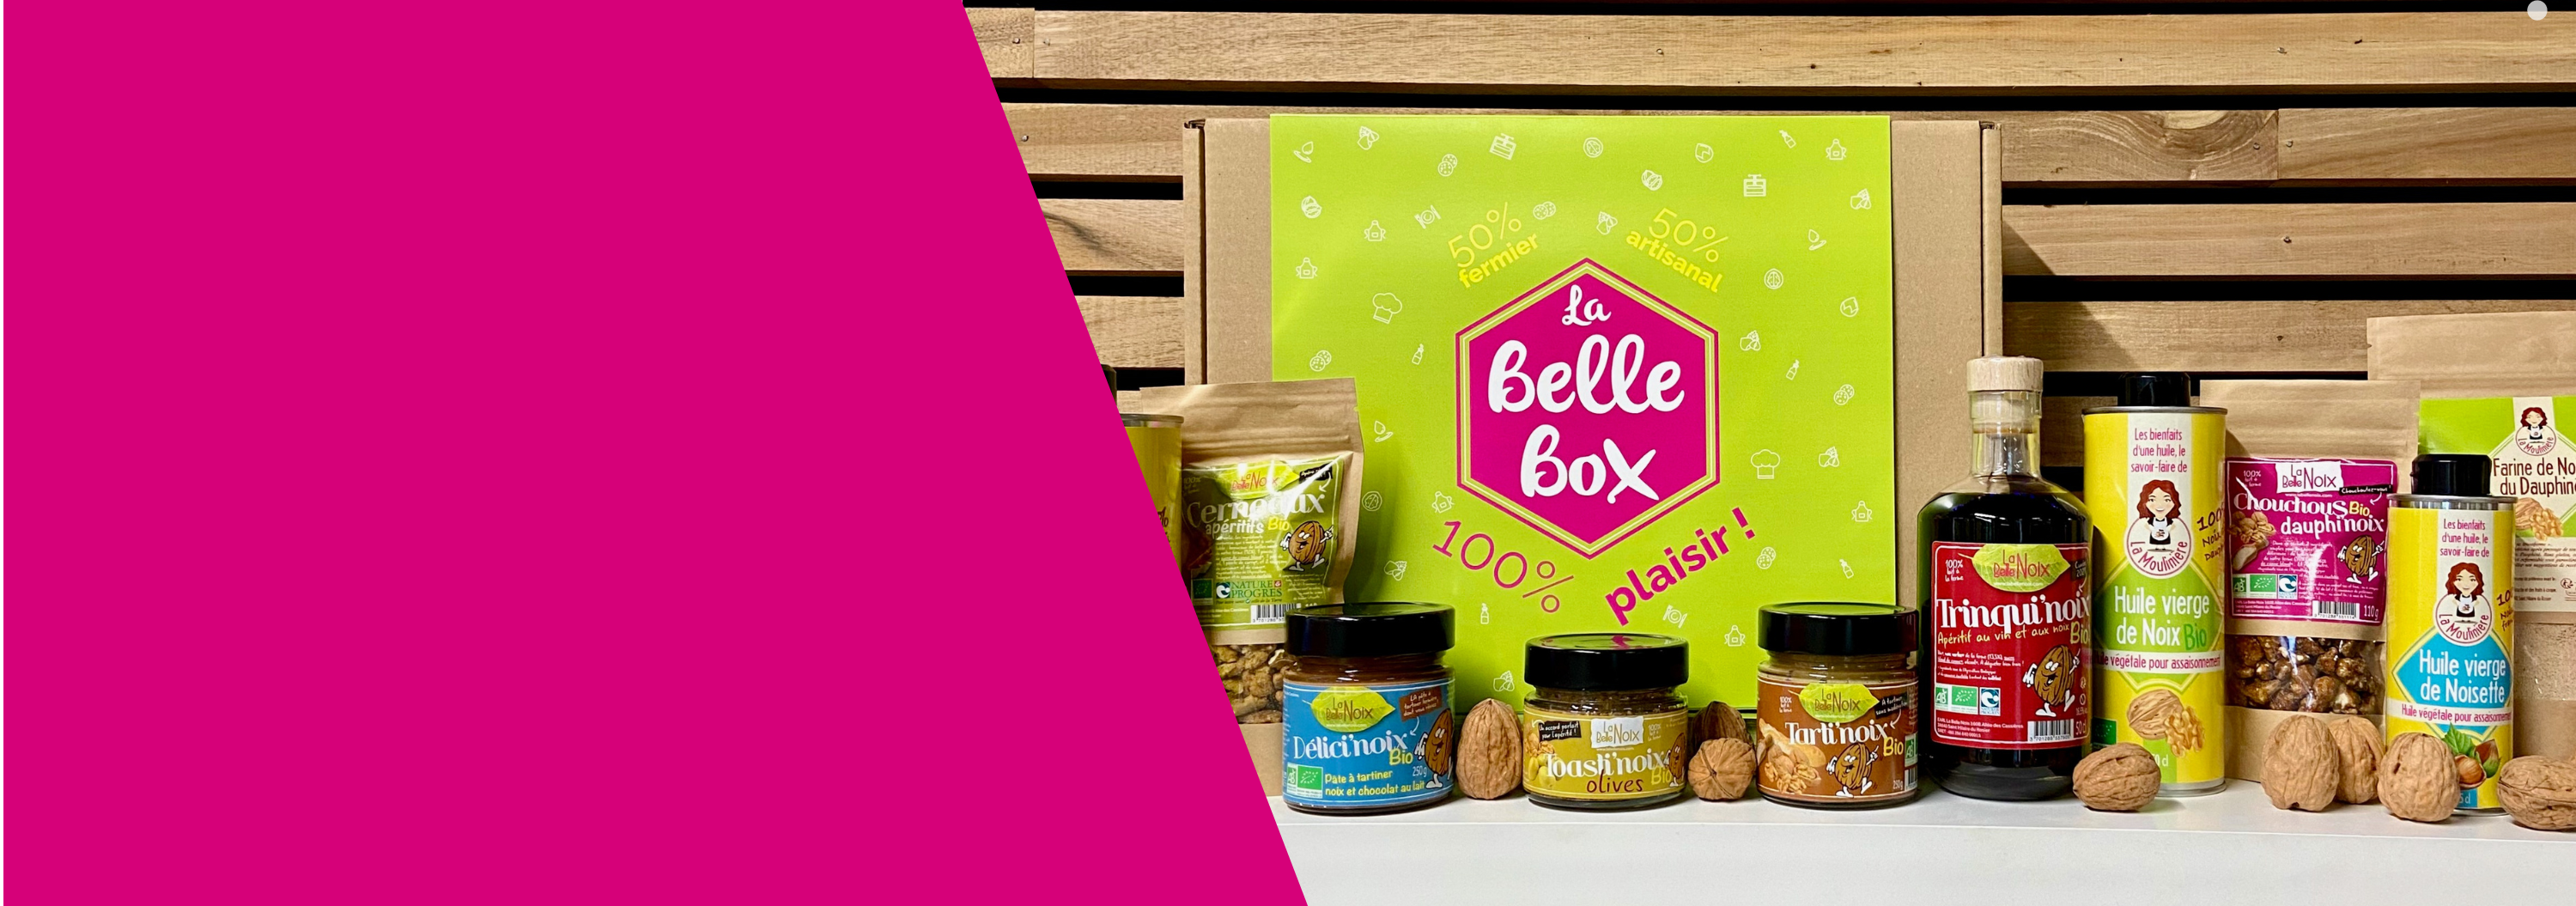 Les Belles Box sont des coffrets à base de produits fermiers, artisanaux et locaux, parfaits pour les fêtes